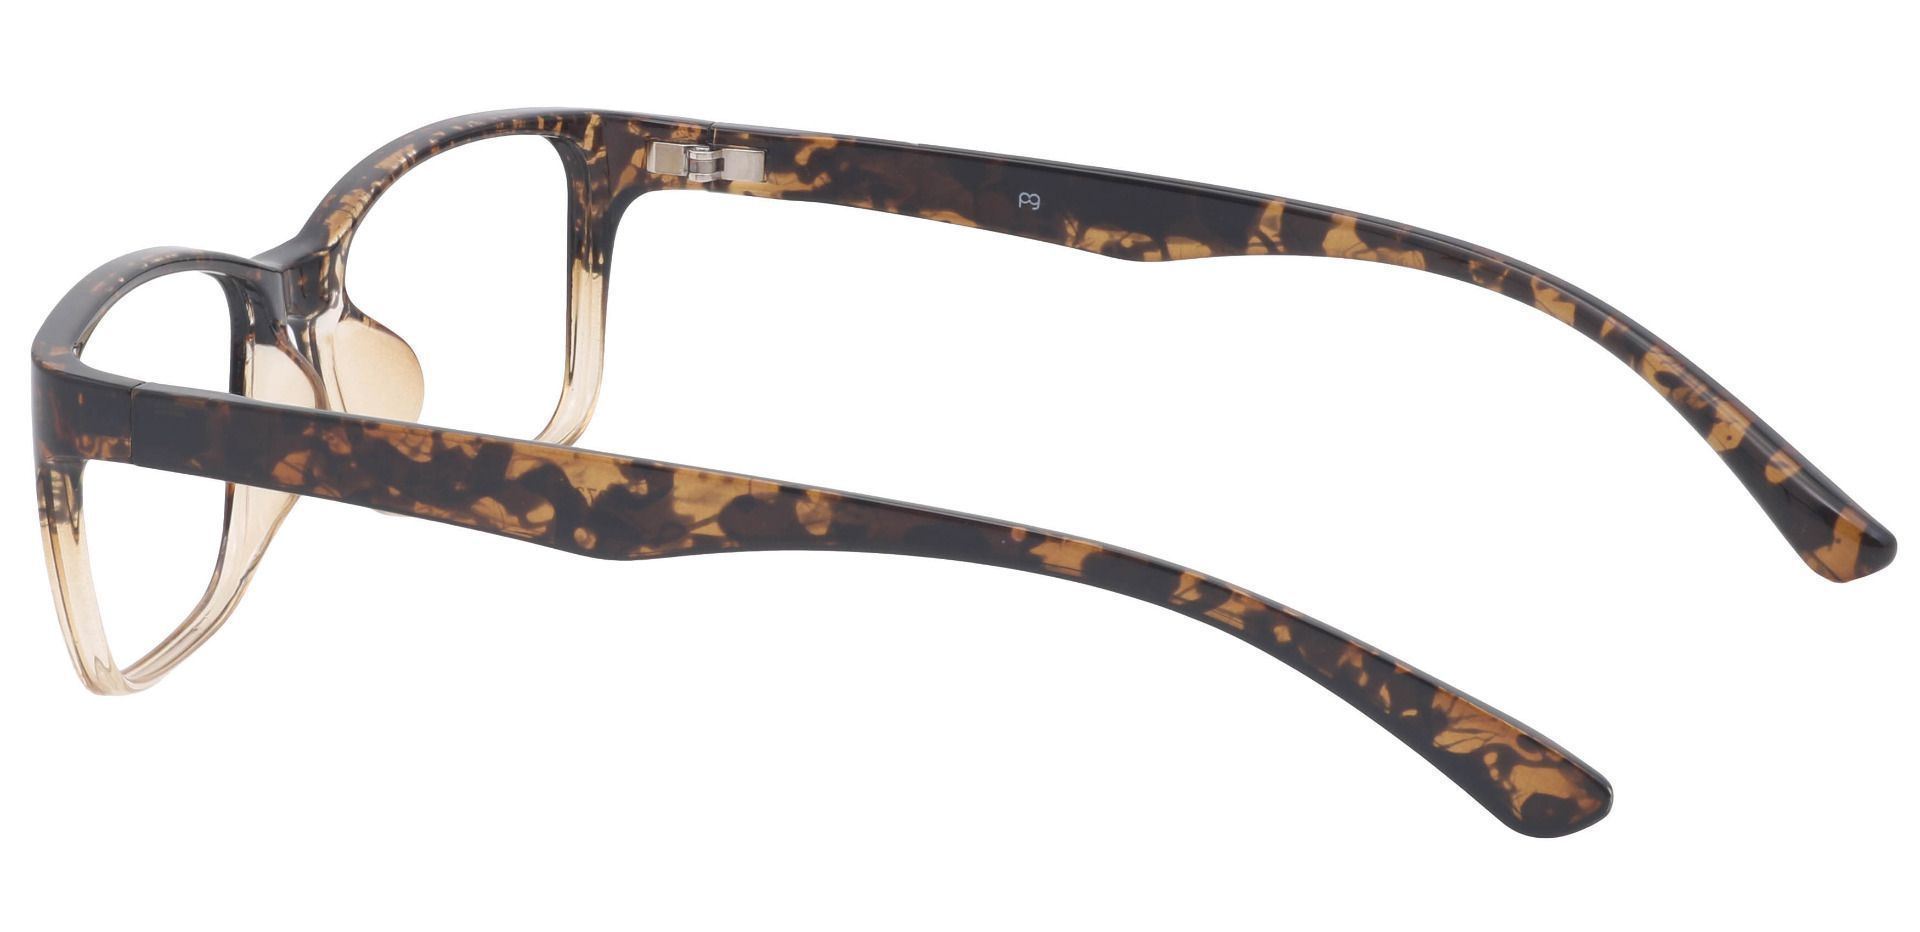 Hudson Rectangle Lined Bifocal Glasses - Tortoise